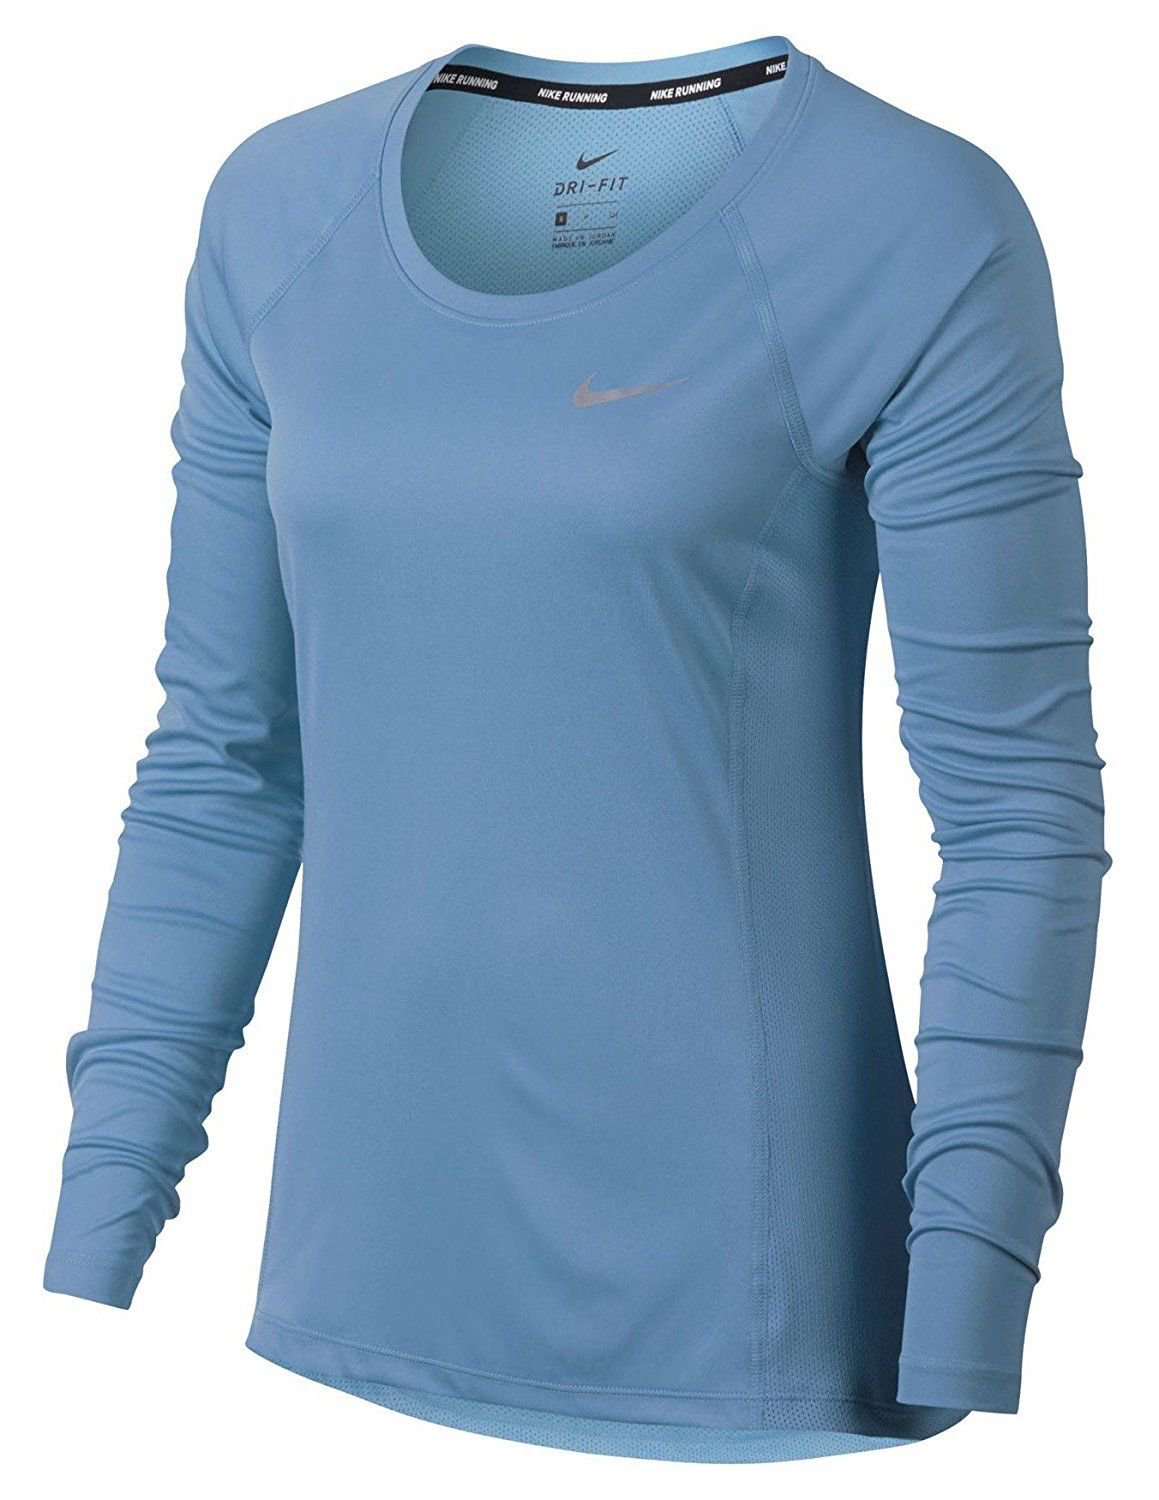 Nike Women's Dry Miler Top Long Sleeve RUNNING SHIRT 831540 465 LIGHT ...